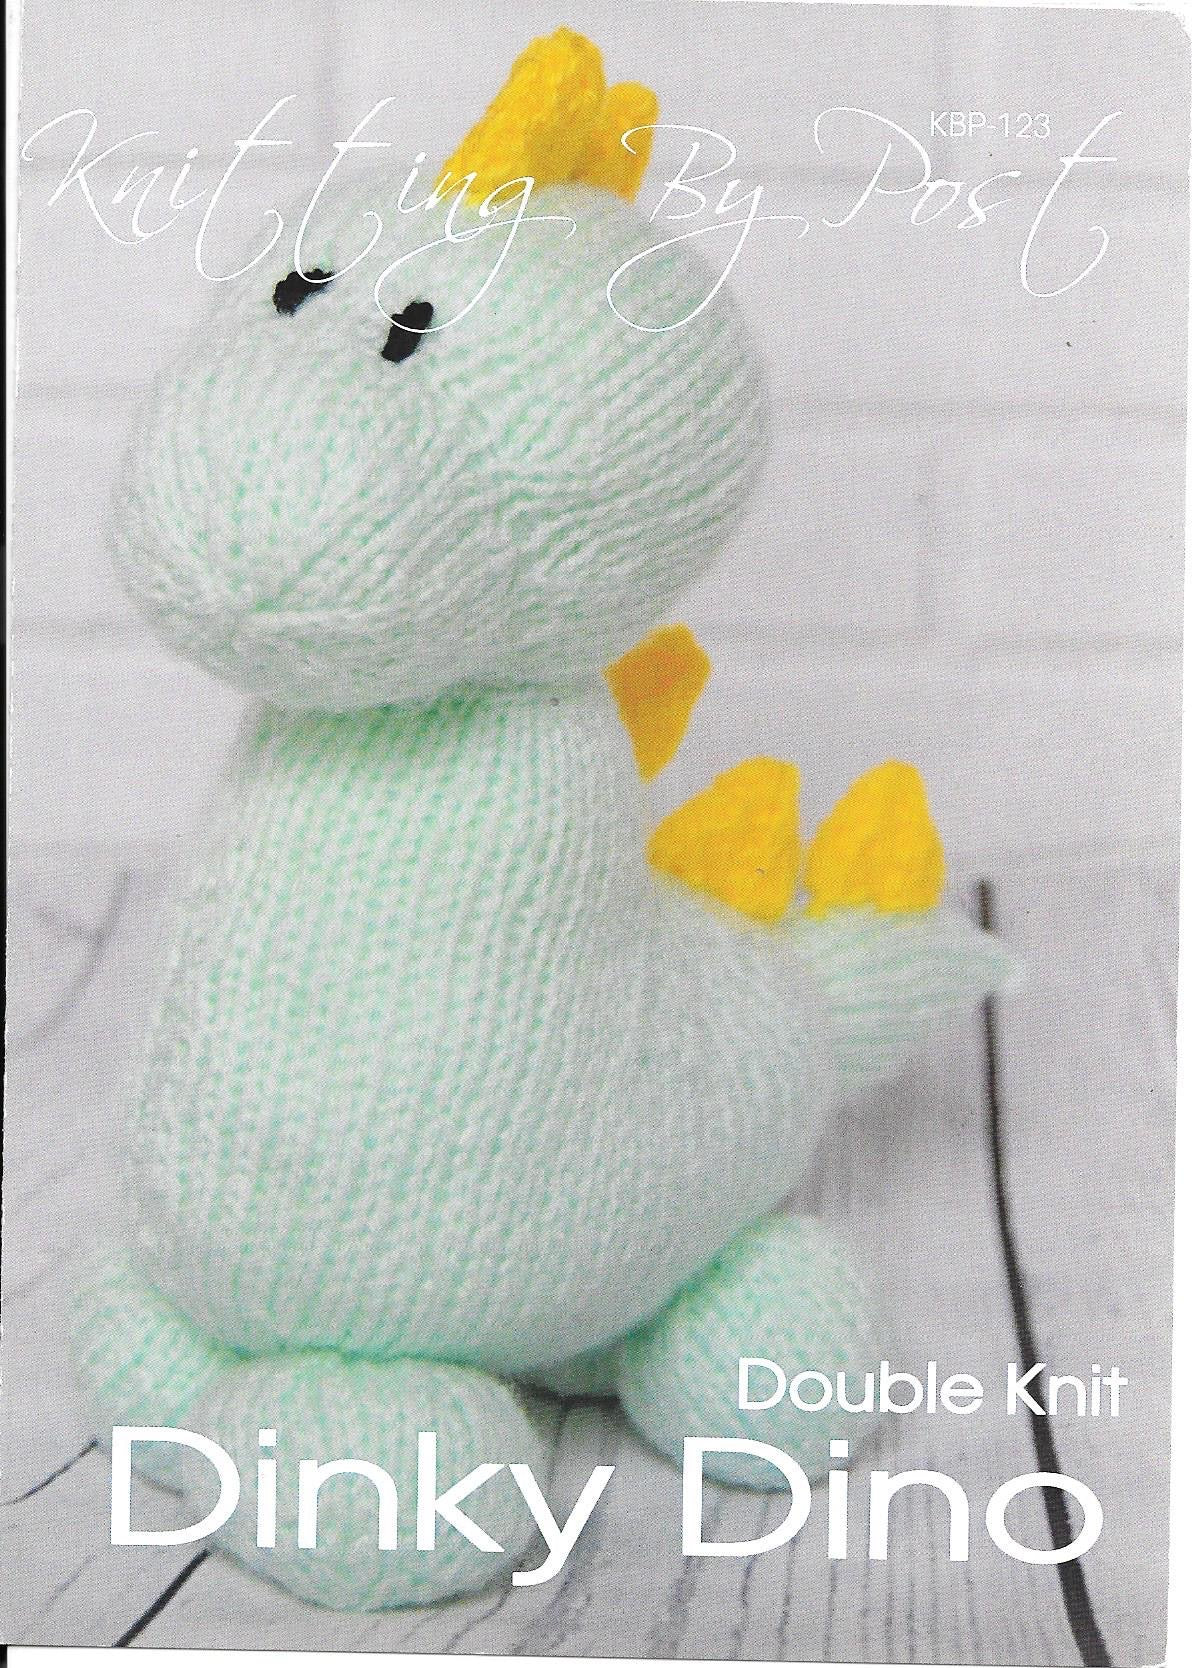 123 KBP123 Dinky Dino toy in Dk Knitting Pattern